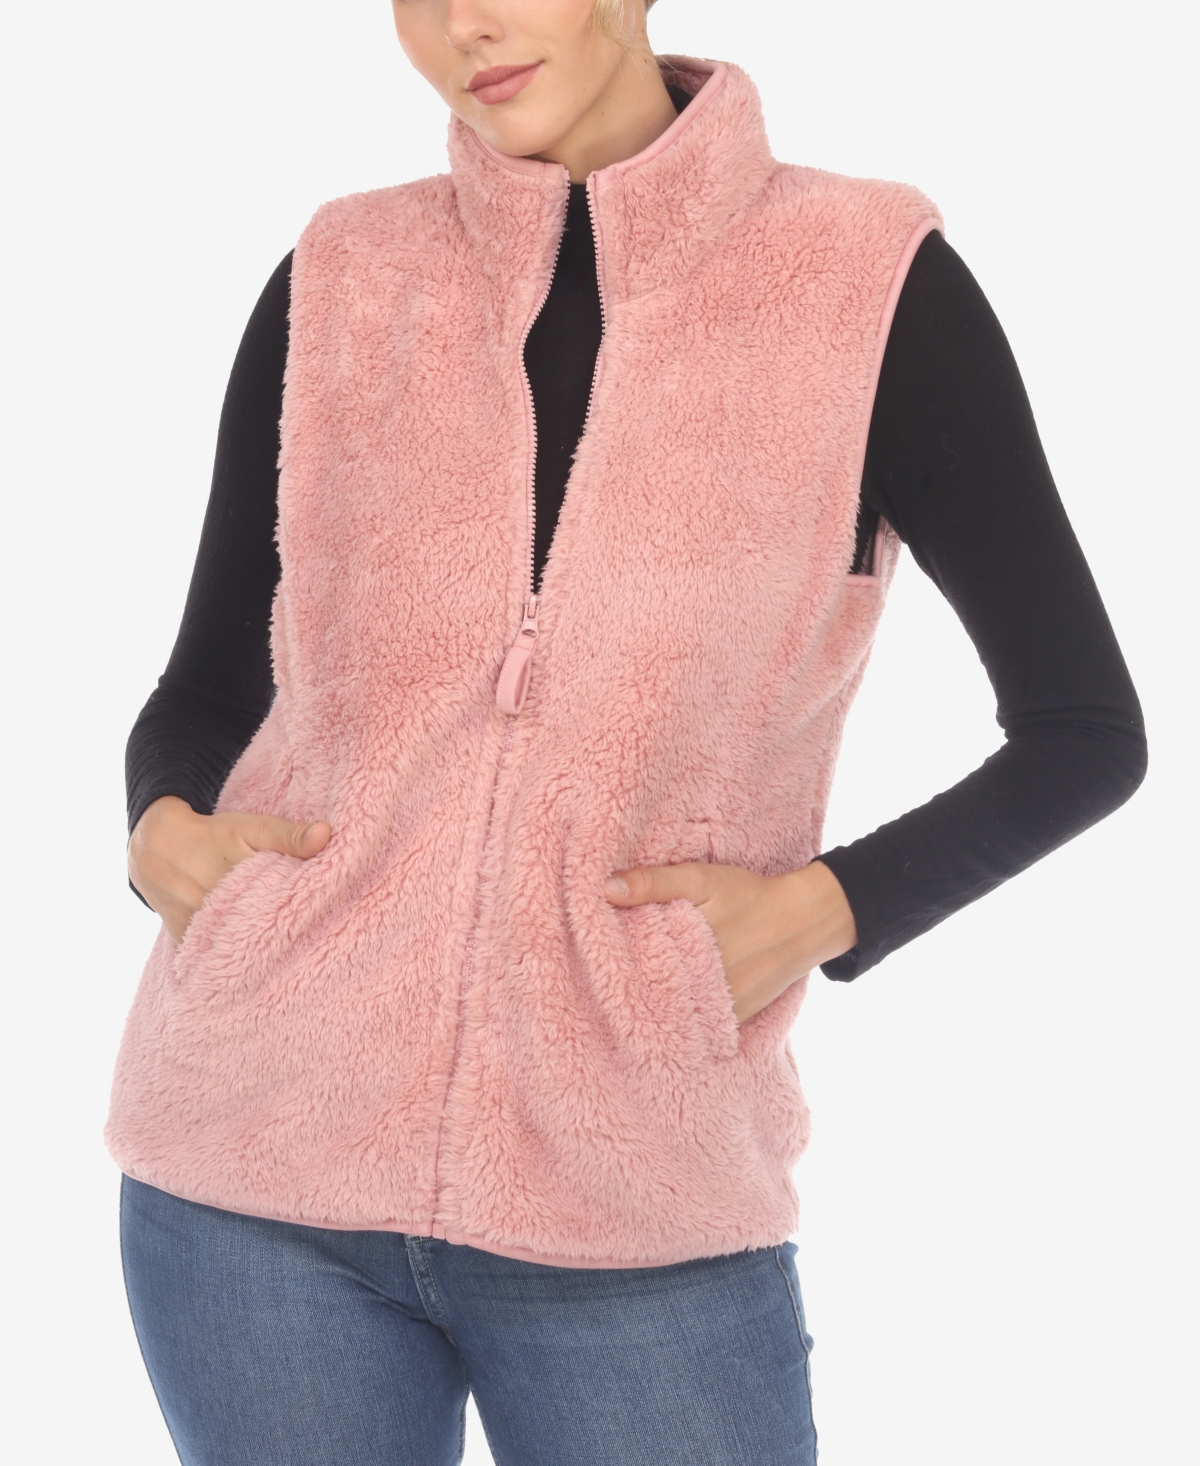 Women's Zip Up Sherpa Vest - Pink